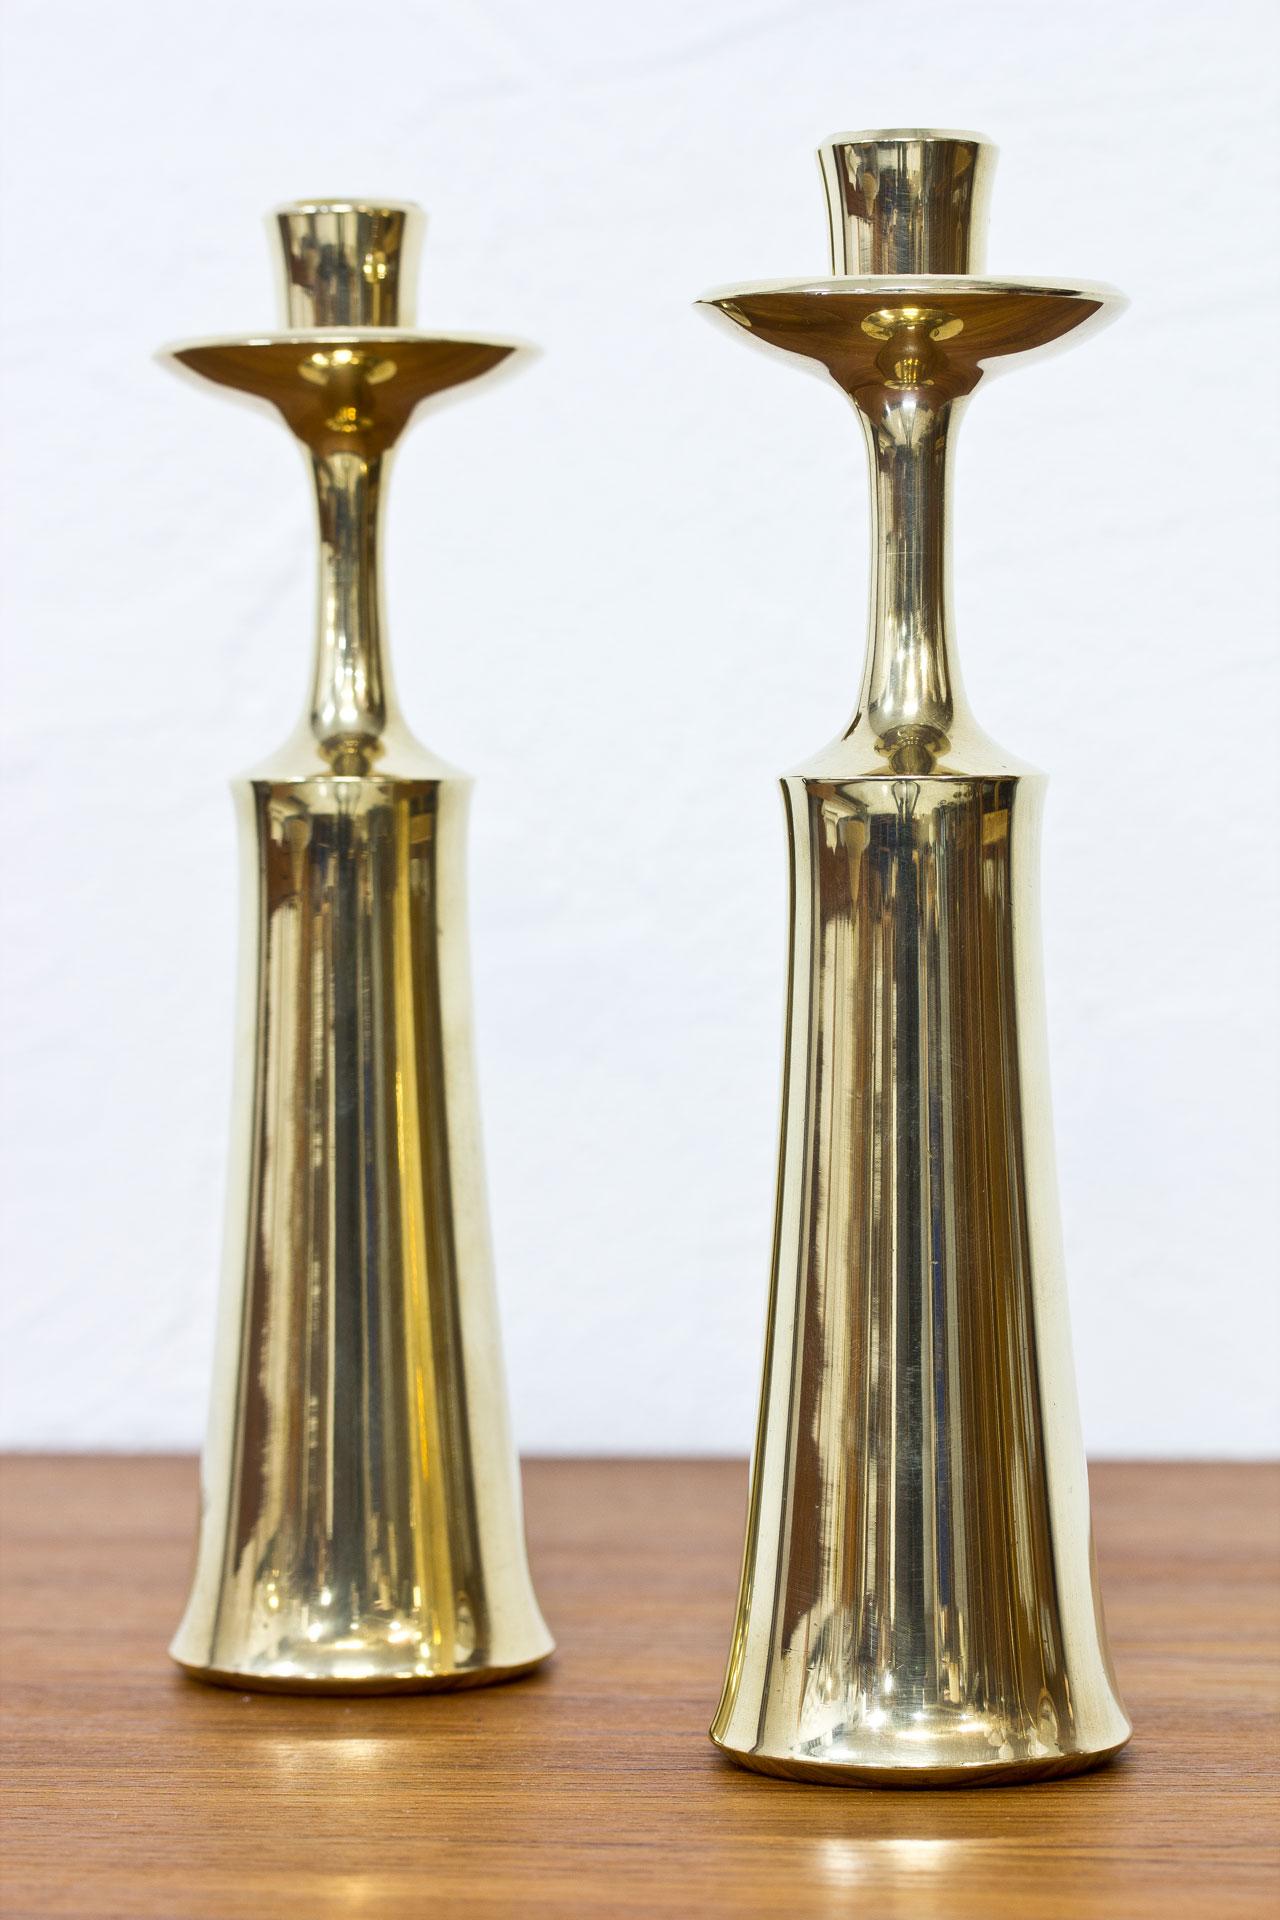 Danish Scandinavian Modern Solid Brass Candlesticks by Jens Quistgaard, Denmark, Pair